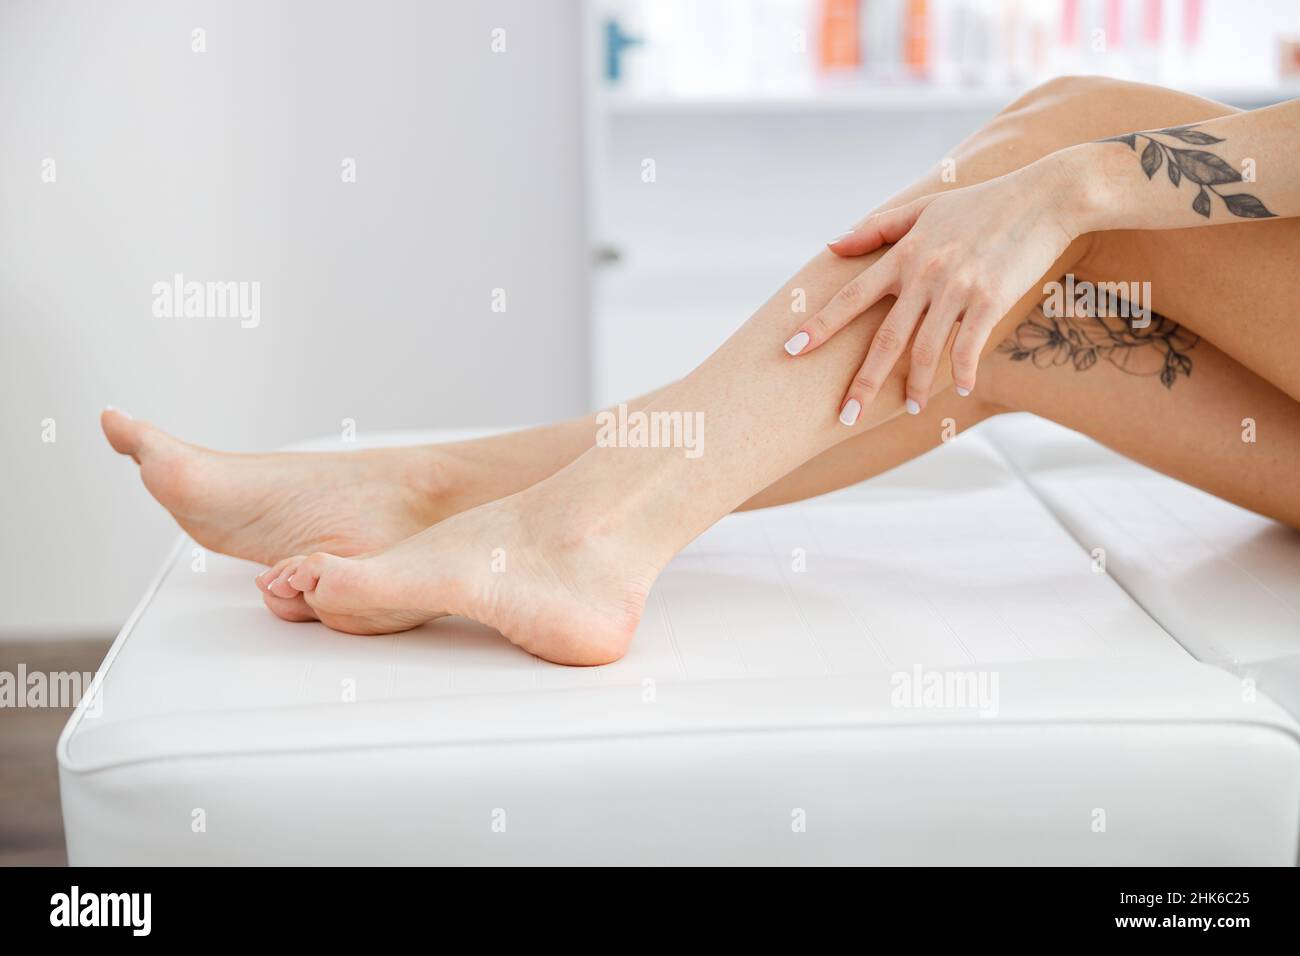 Weibliche Beine nach dem Epilieren im Schönheitssalon Stockfotografie -  Alamy